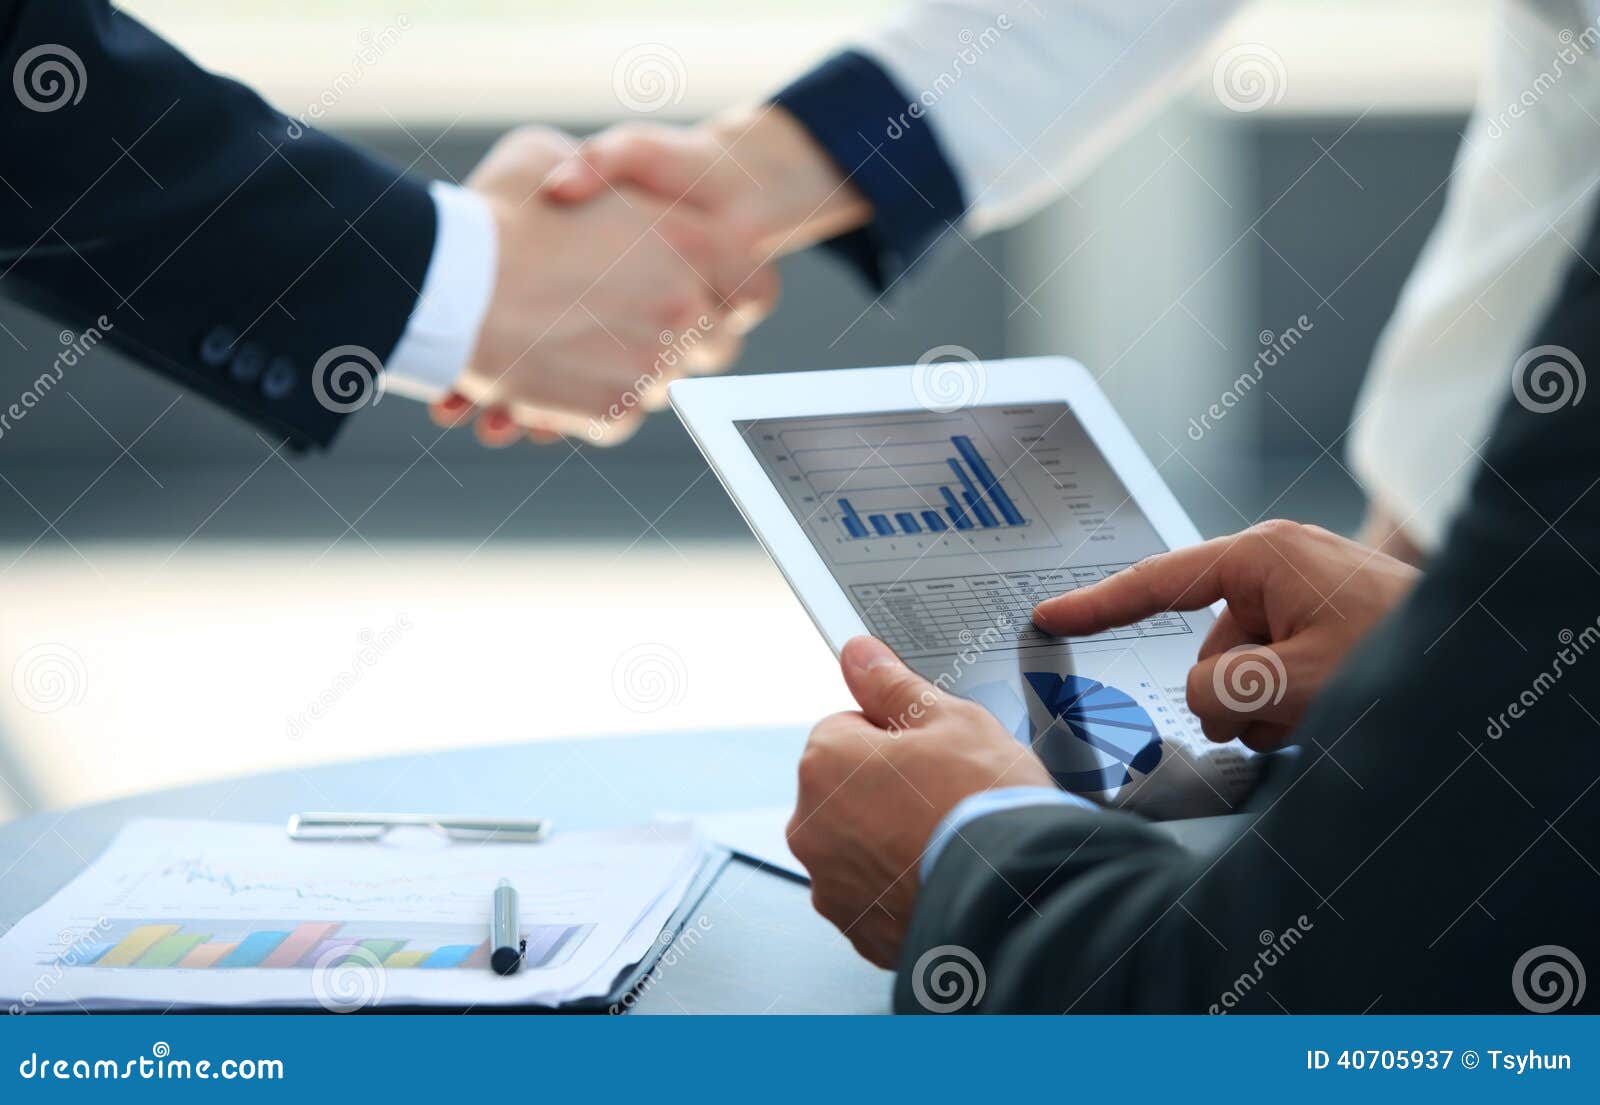 business associates shaking hands